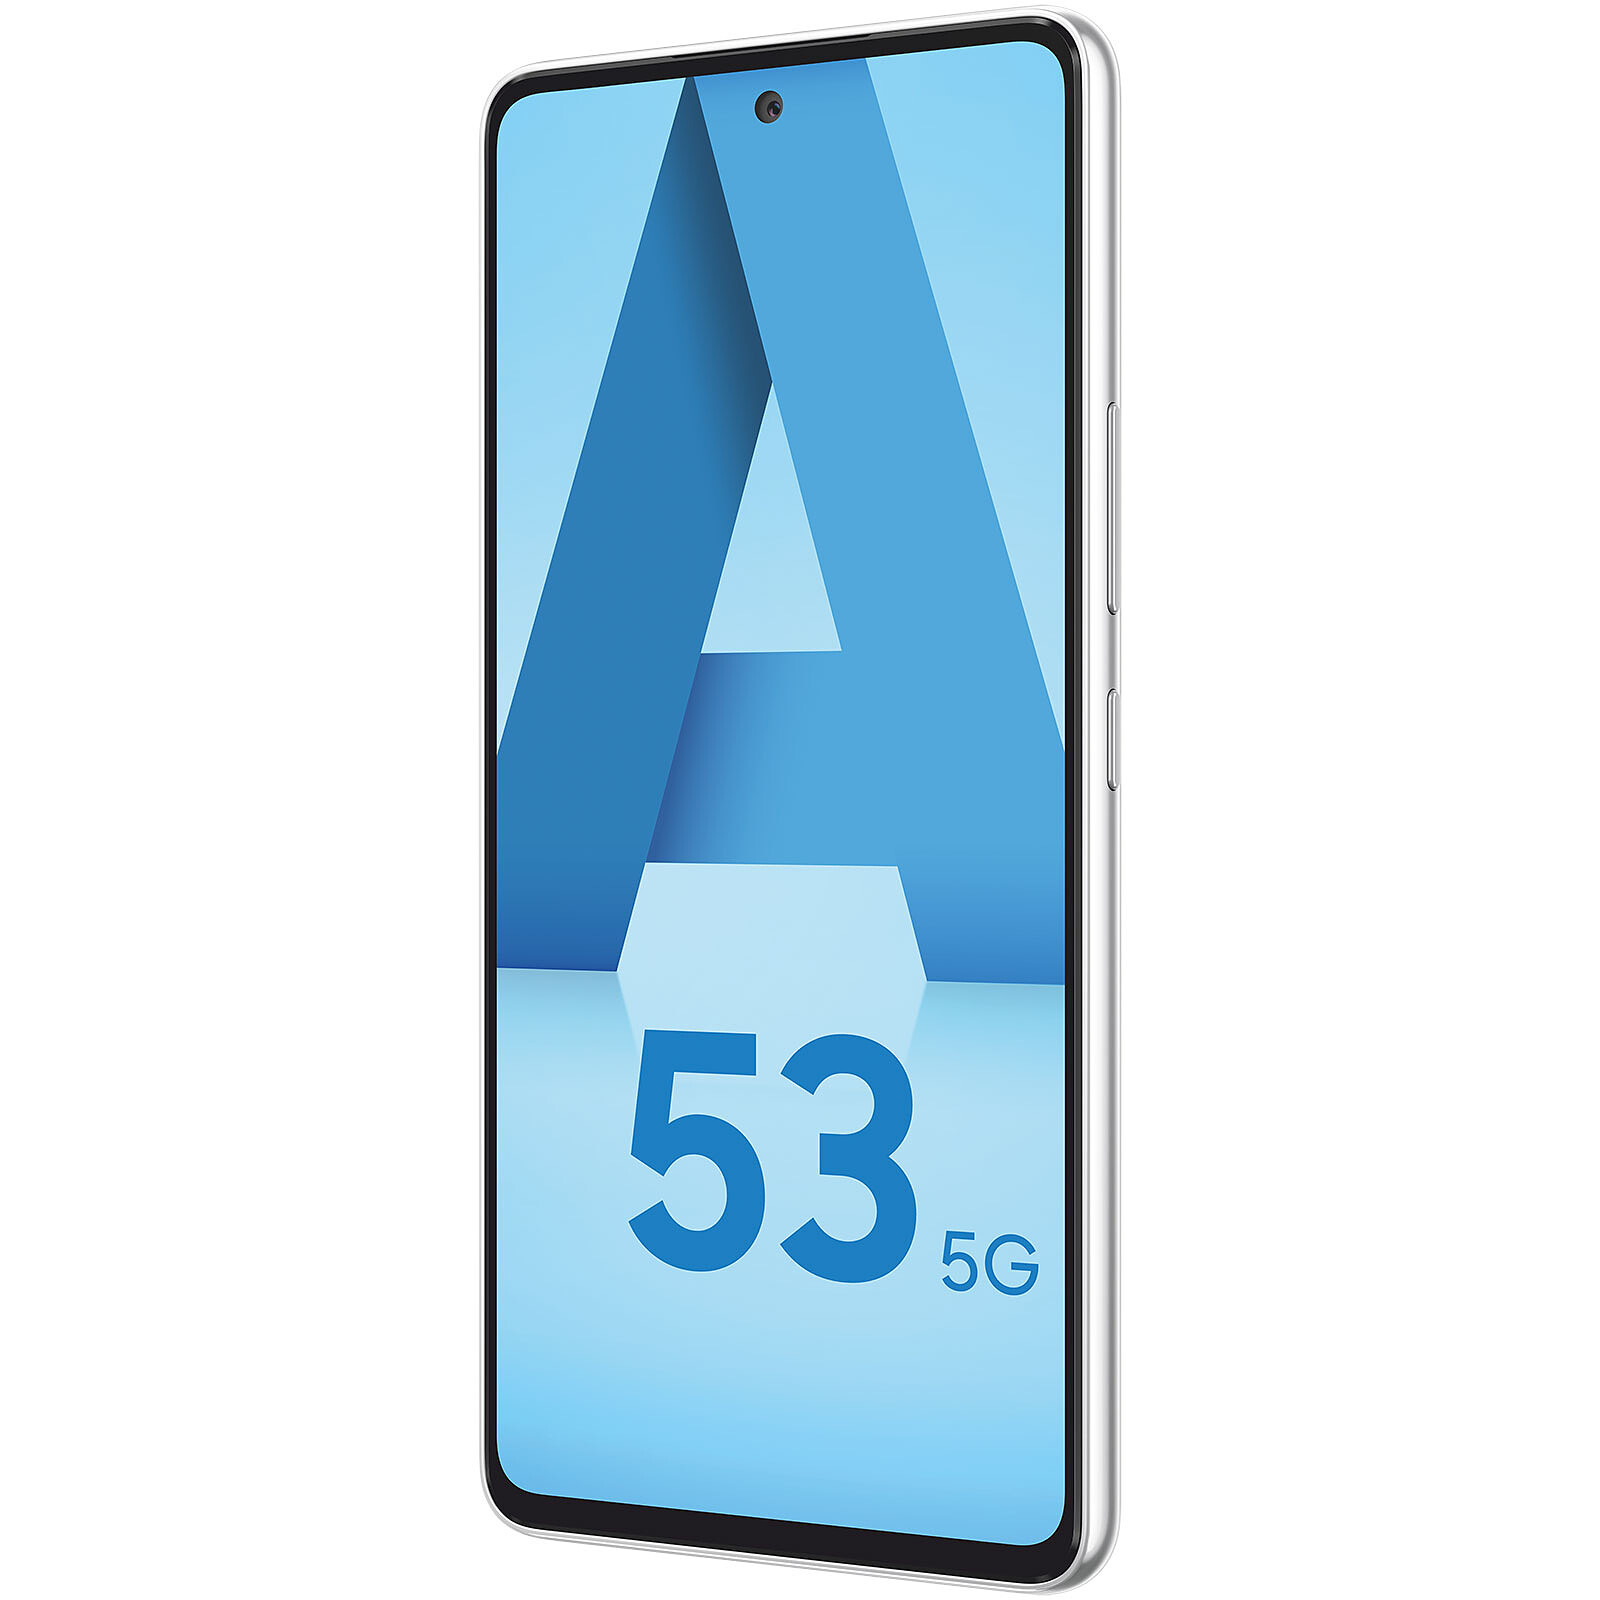 Samsung Galaxy A40 Blanc · Reconditionné - Smartphone reconditionné - LDLC